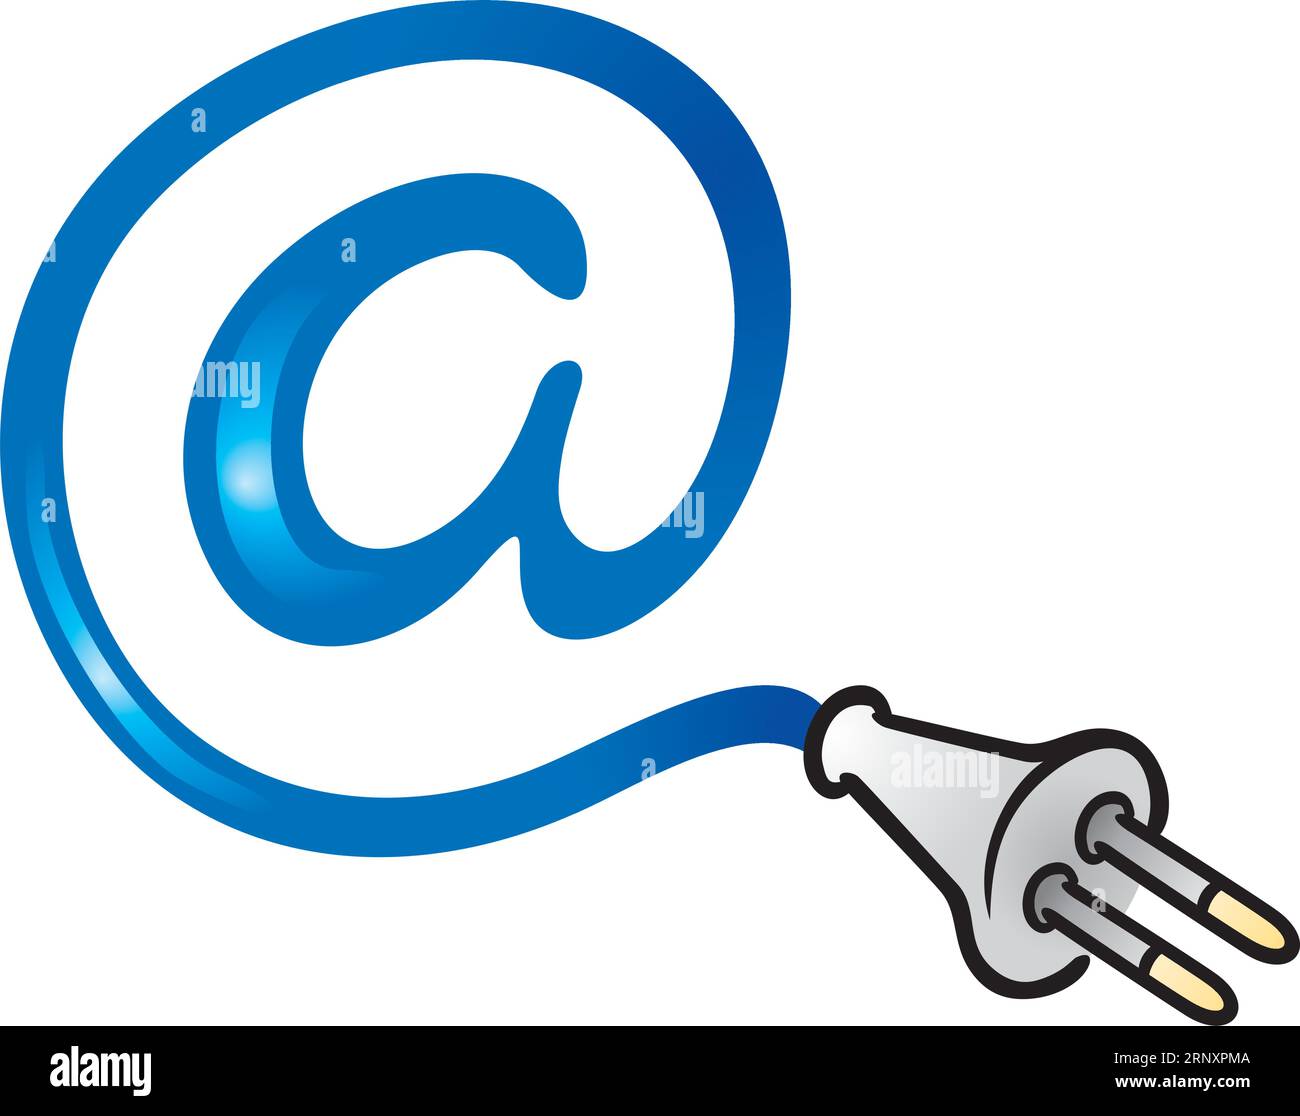 Clipart des blauen Mail-Symbols, das mit dem elektrischen Plug-in verbunden ist Stock Vektor